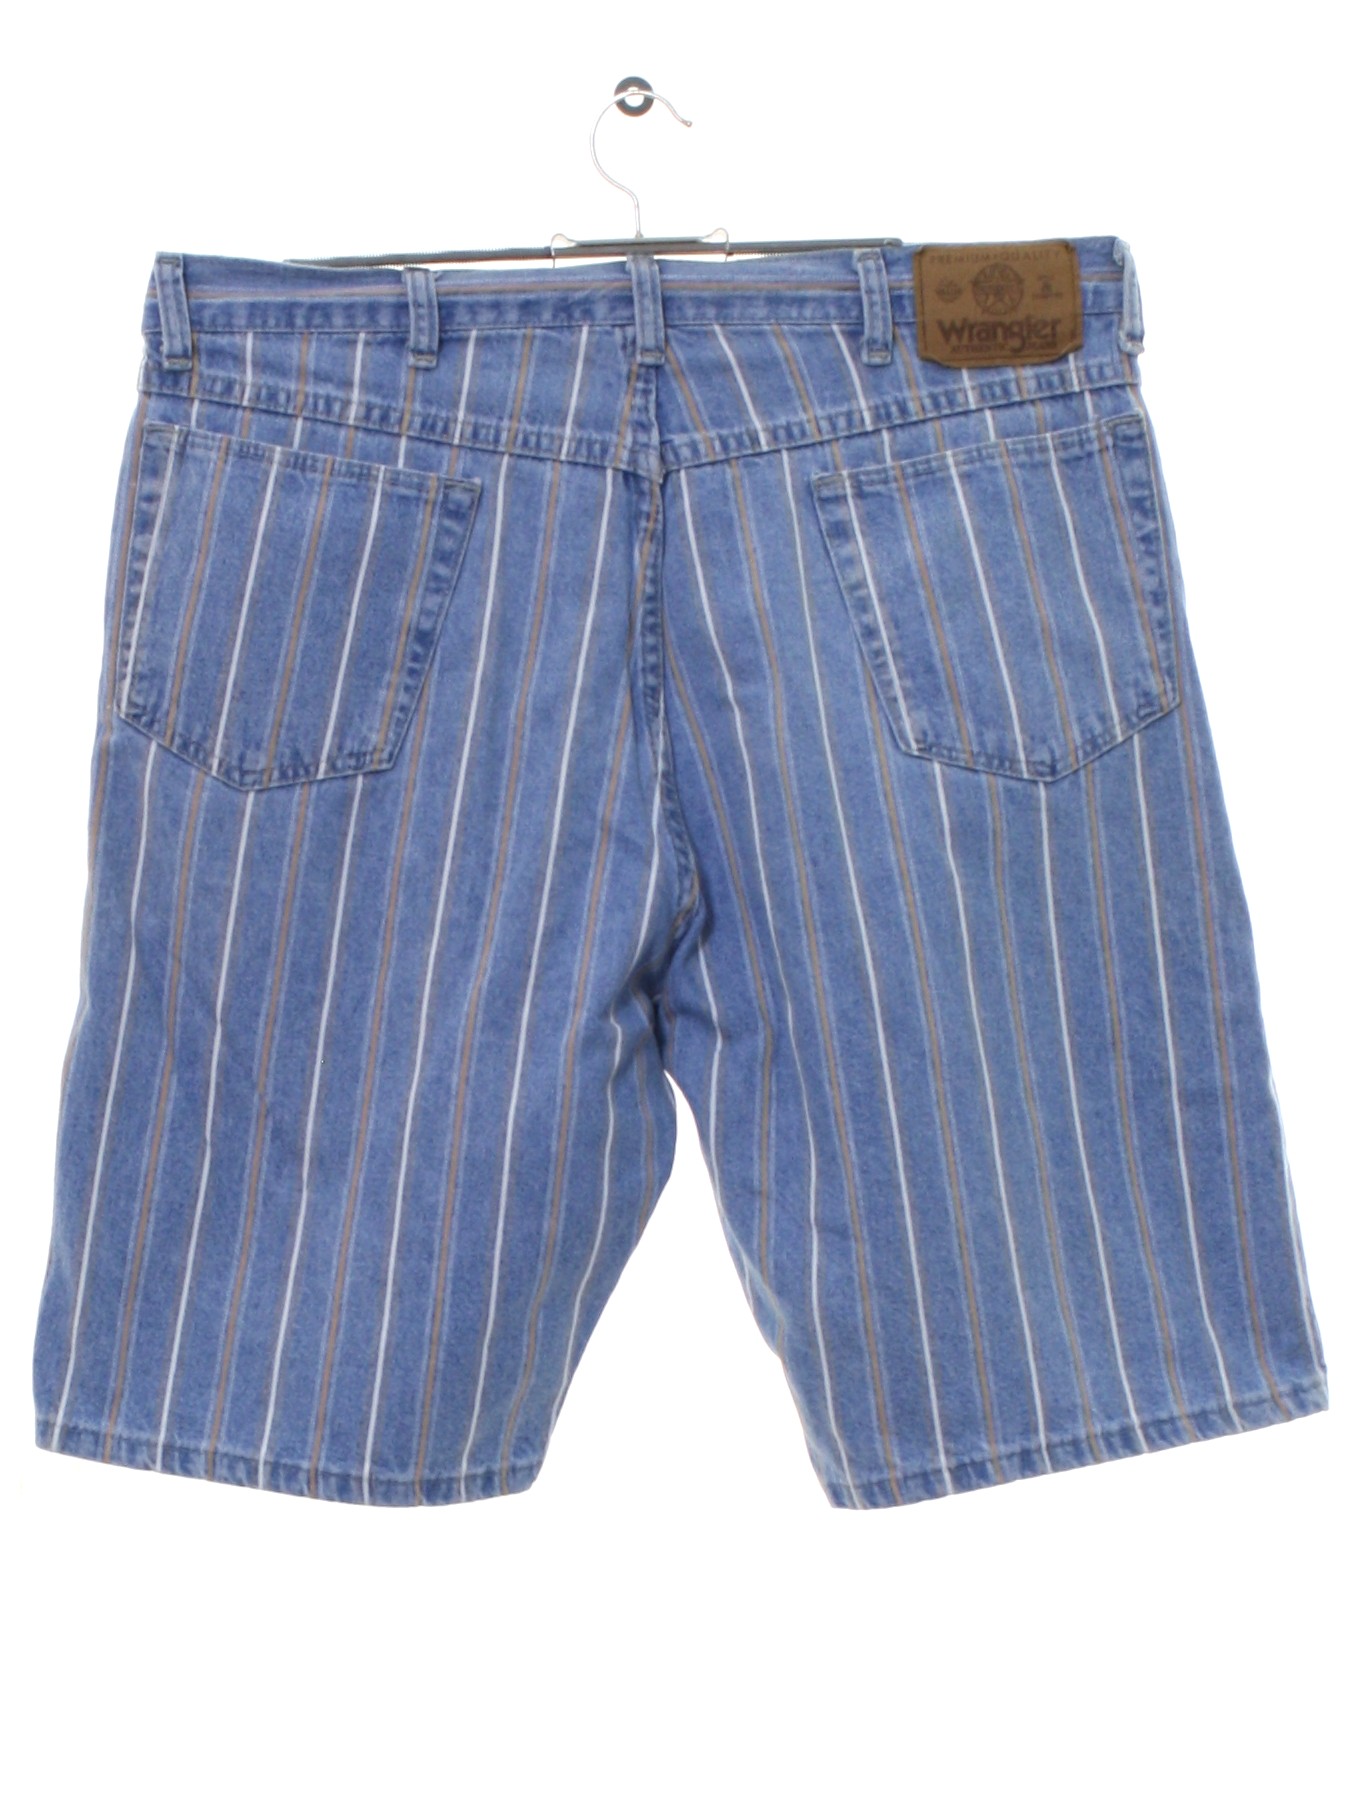 Nineties Wrangler Shorts: 90s -Wrangler- Womens light blue background ...